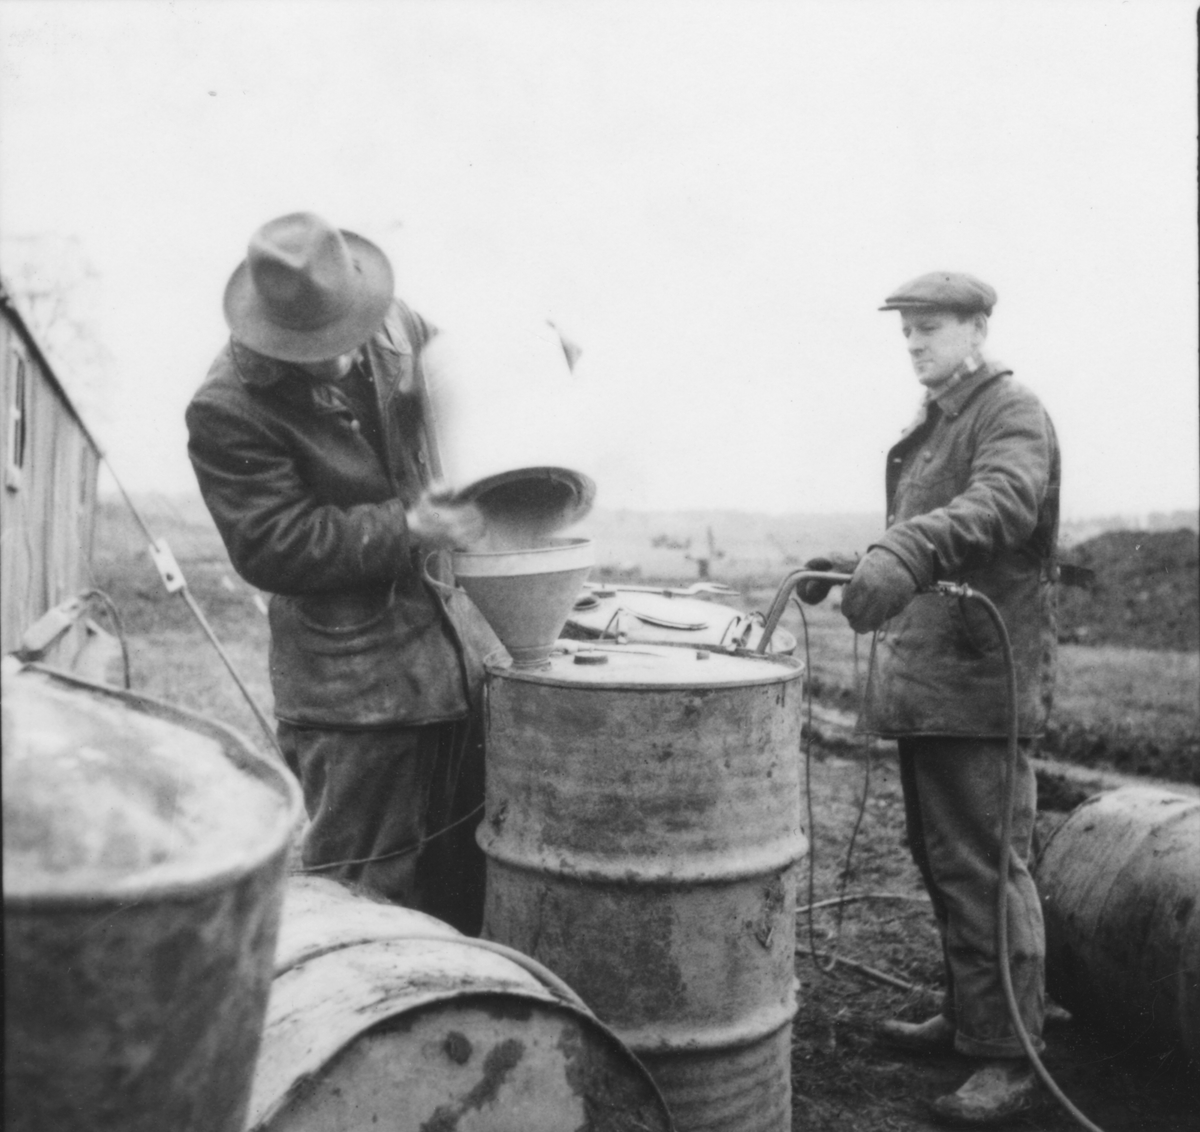 Blandning av bränsle till flygbomb, 1940-tal.
Två män i arbete vid ett fat.